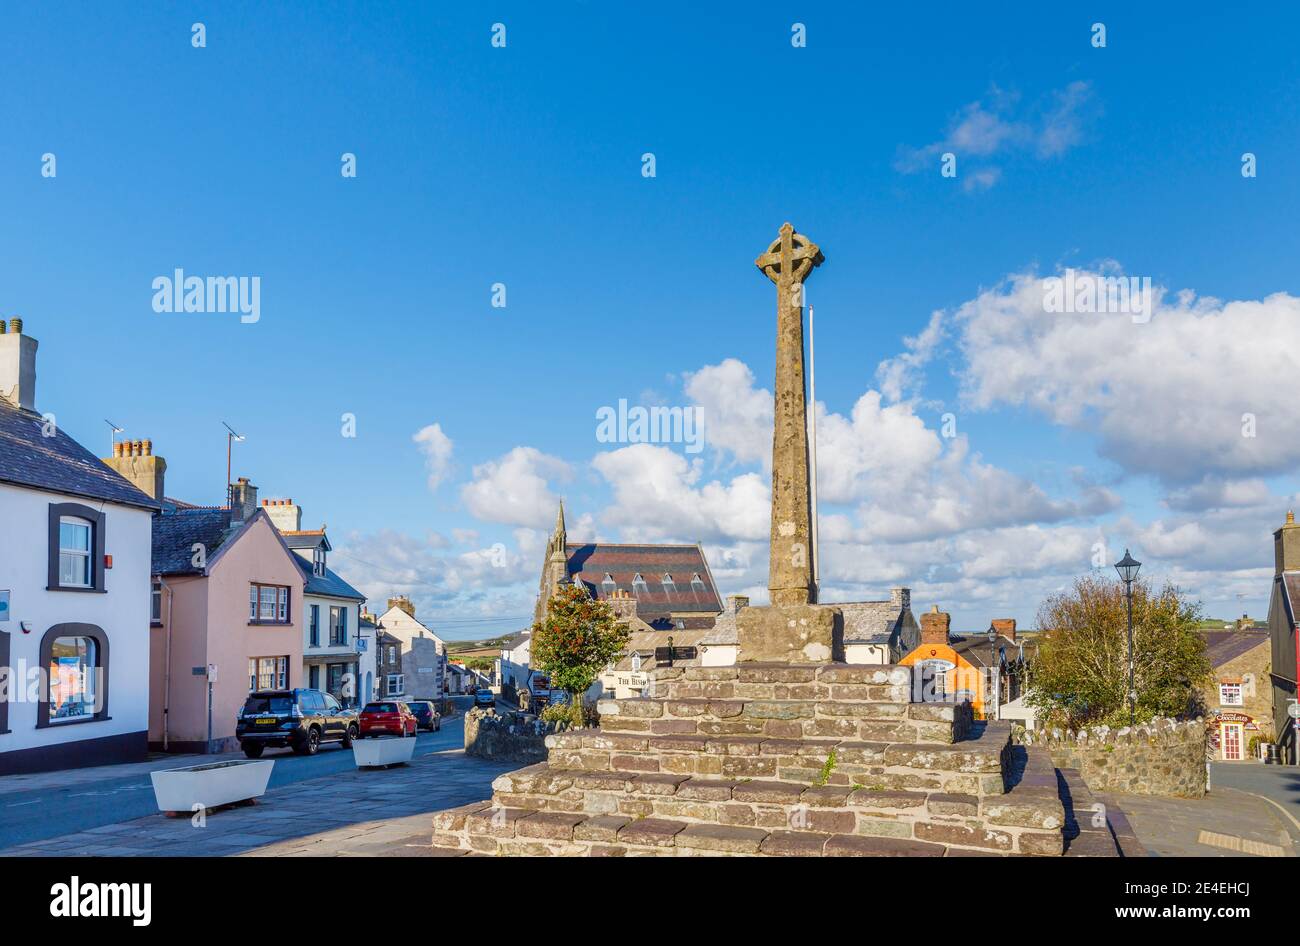 Le mémorial de guerre de Cross Square, au centre de St Davids, une petite ville cathédrale de Pembrokeshire, au sud-ouest du pays de Galles Banque D'Images